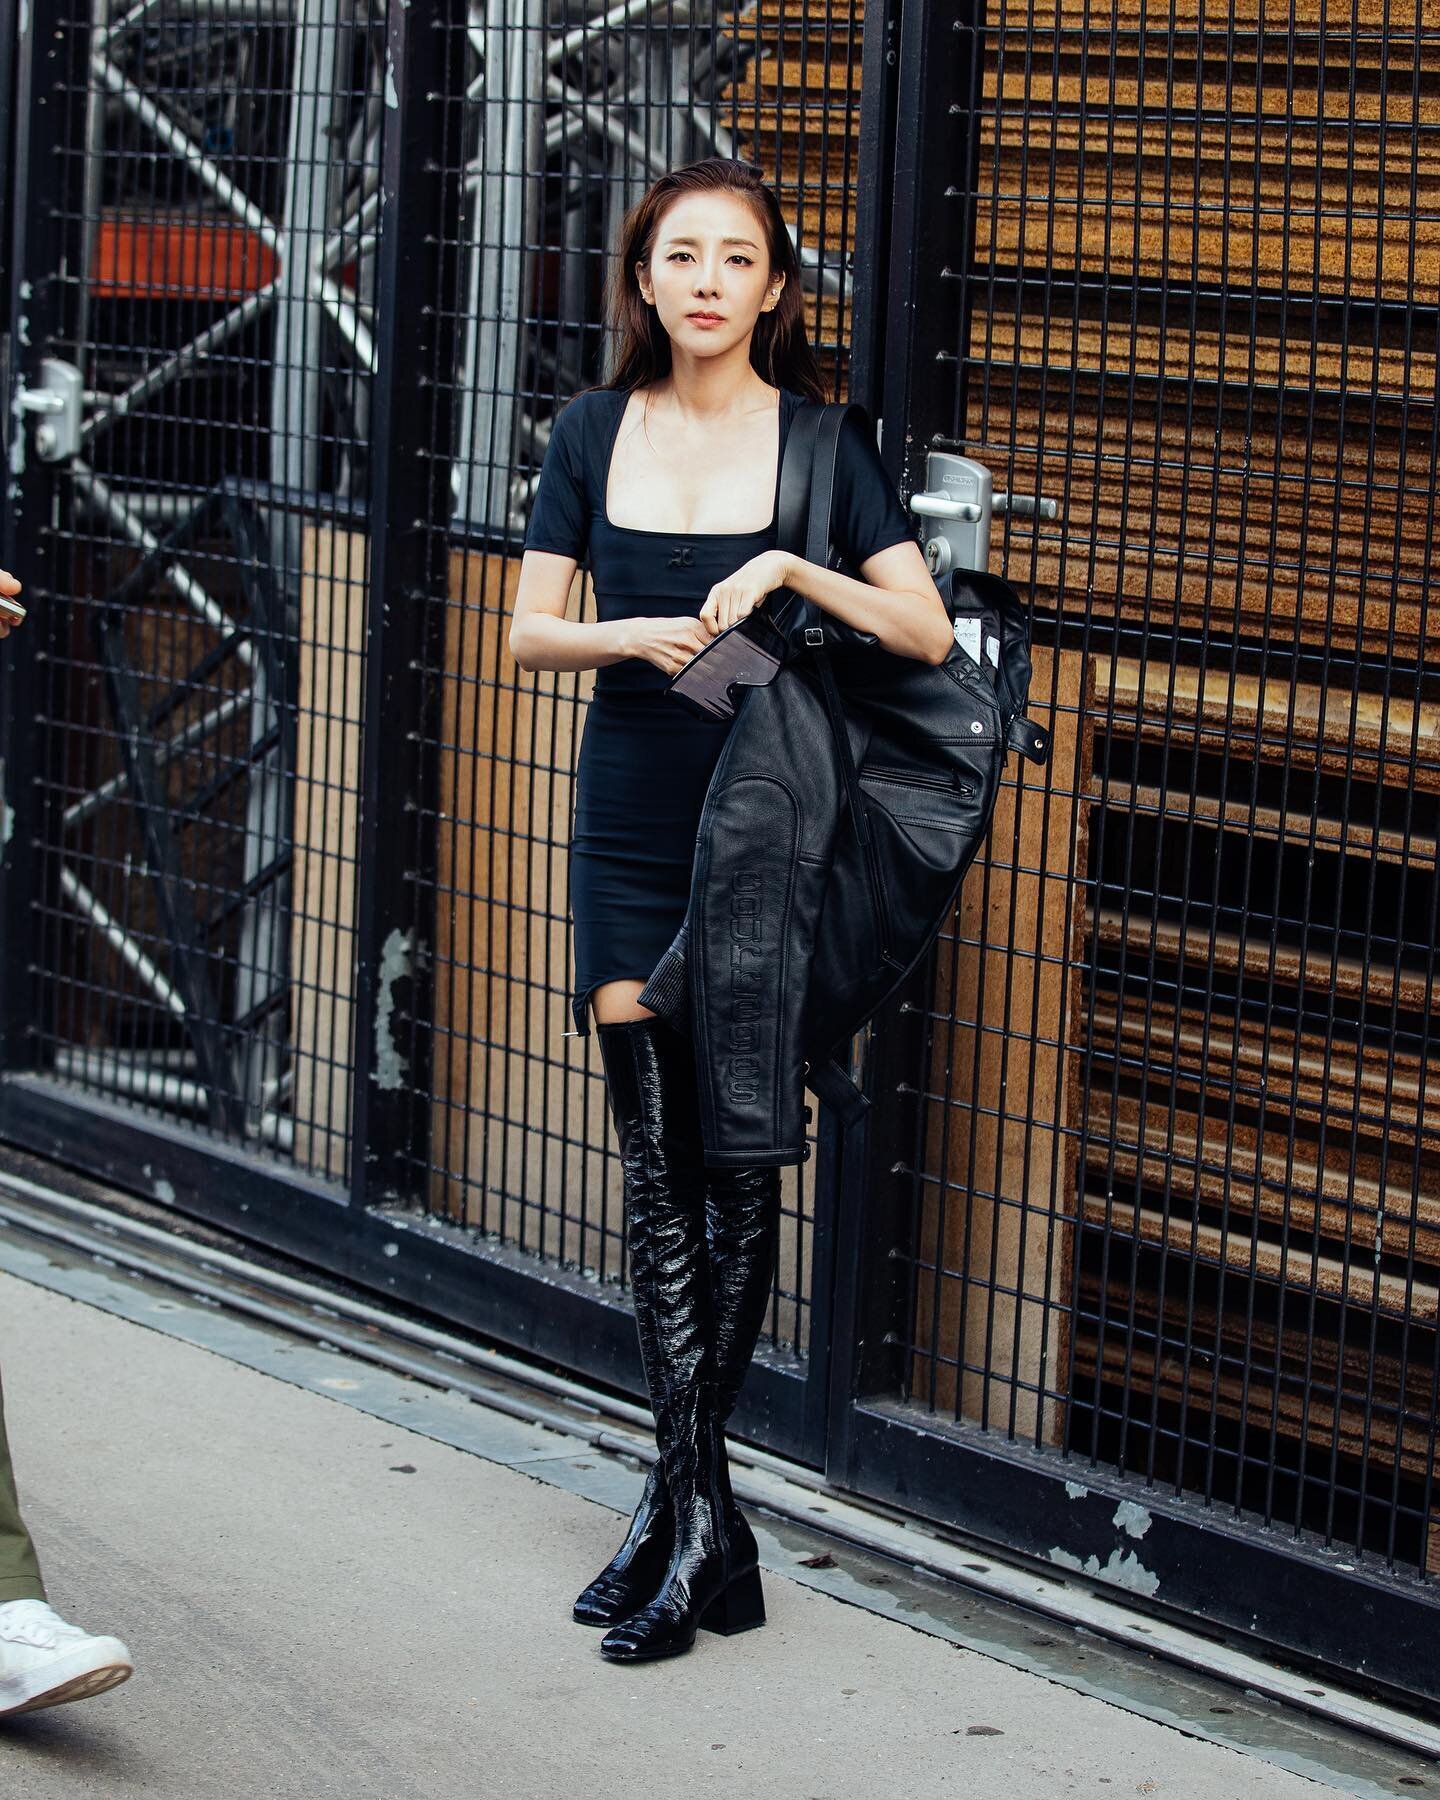 Dara Style on X: [SNS Update] 170703 - #DARA's Instagram post